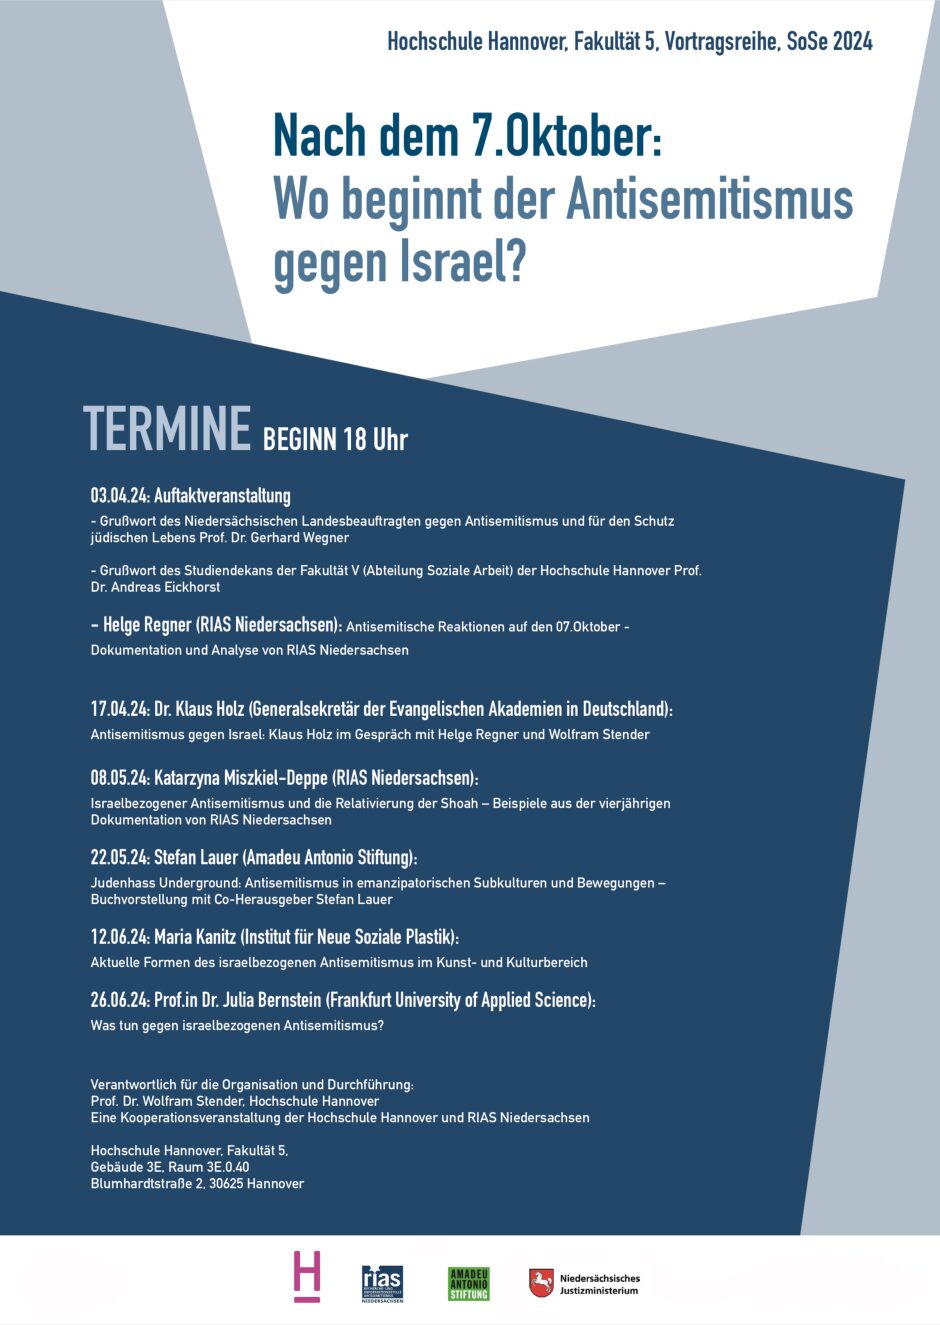 Israelbezogener Antisemitismus und Relativierung der Shoah - Beispiele aus der vierjährigen Dokumentation von RIAS Niedersachsen (mit Katarzyna Miszkiel-Deppe)